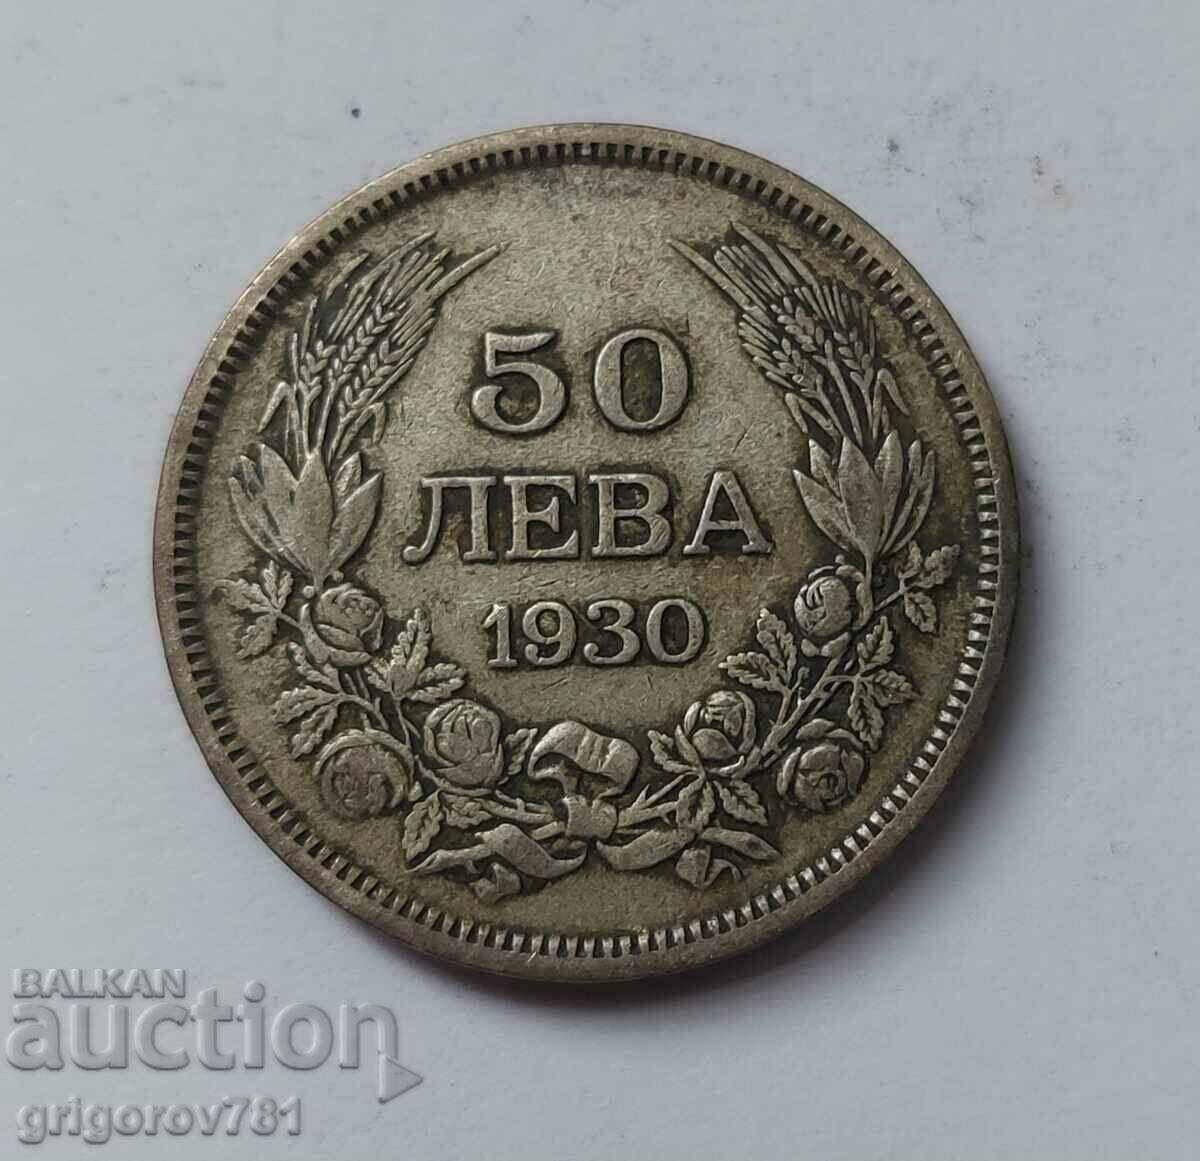 Ασήμι 50 λέβα Βουλγαρία 1930 - ασημένιο νόμισμα #50